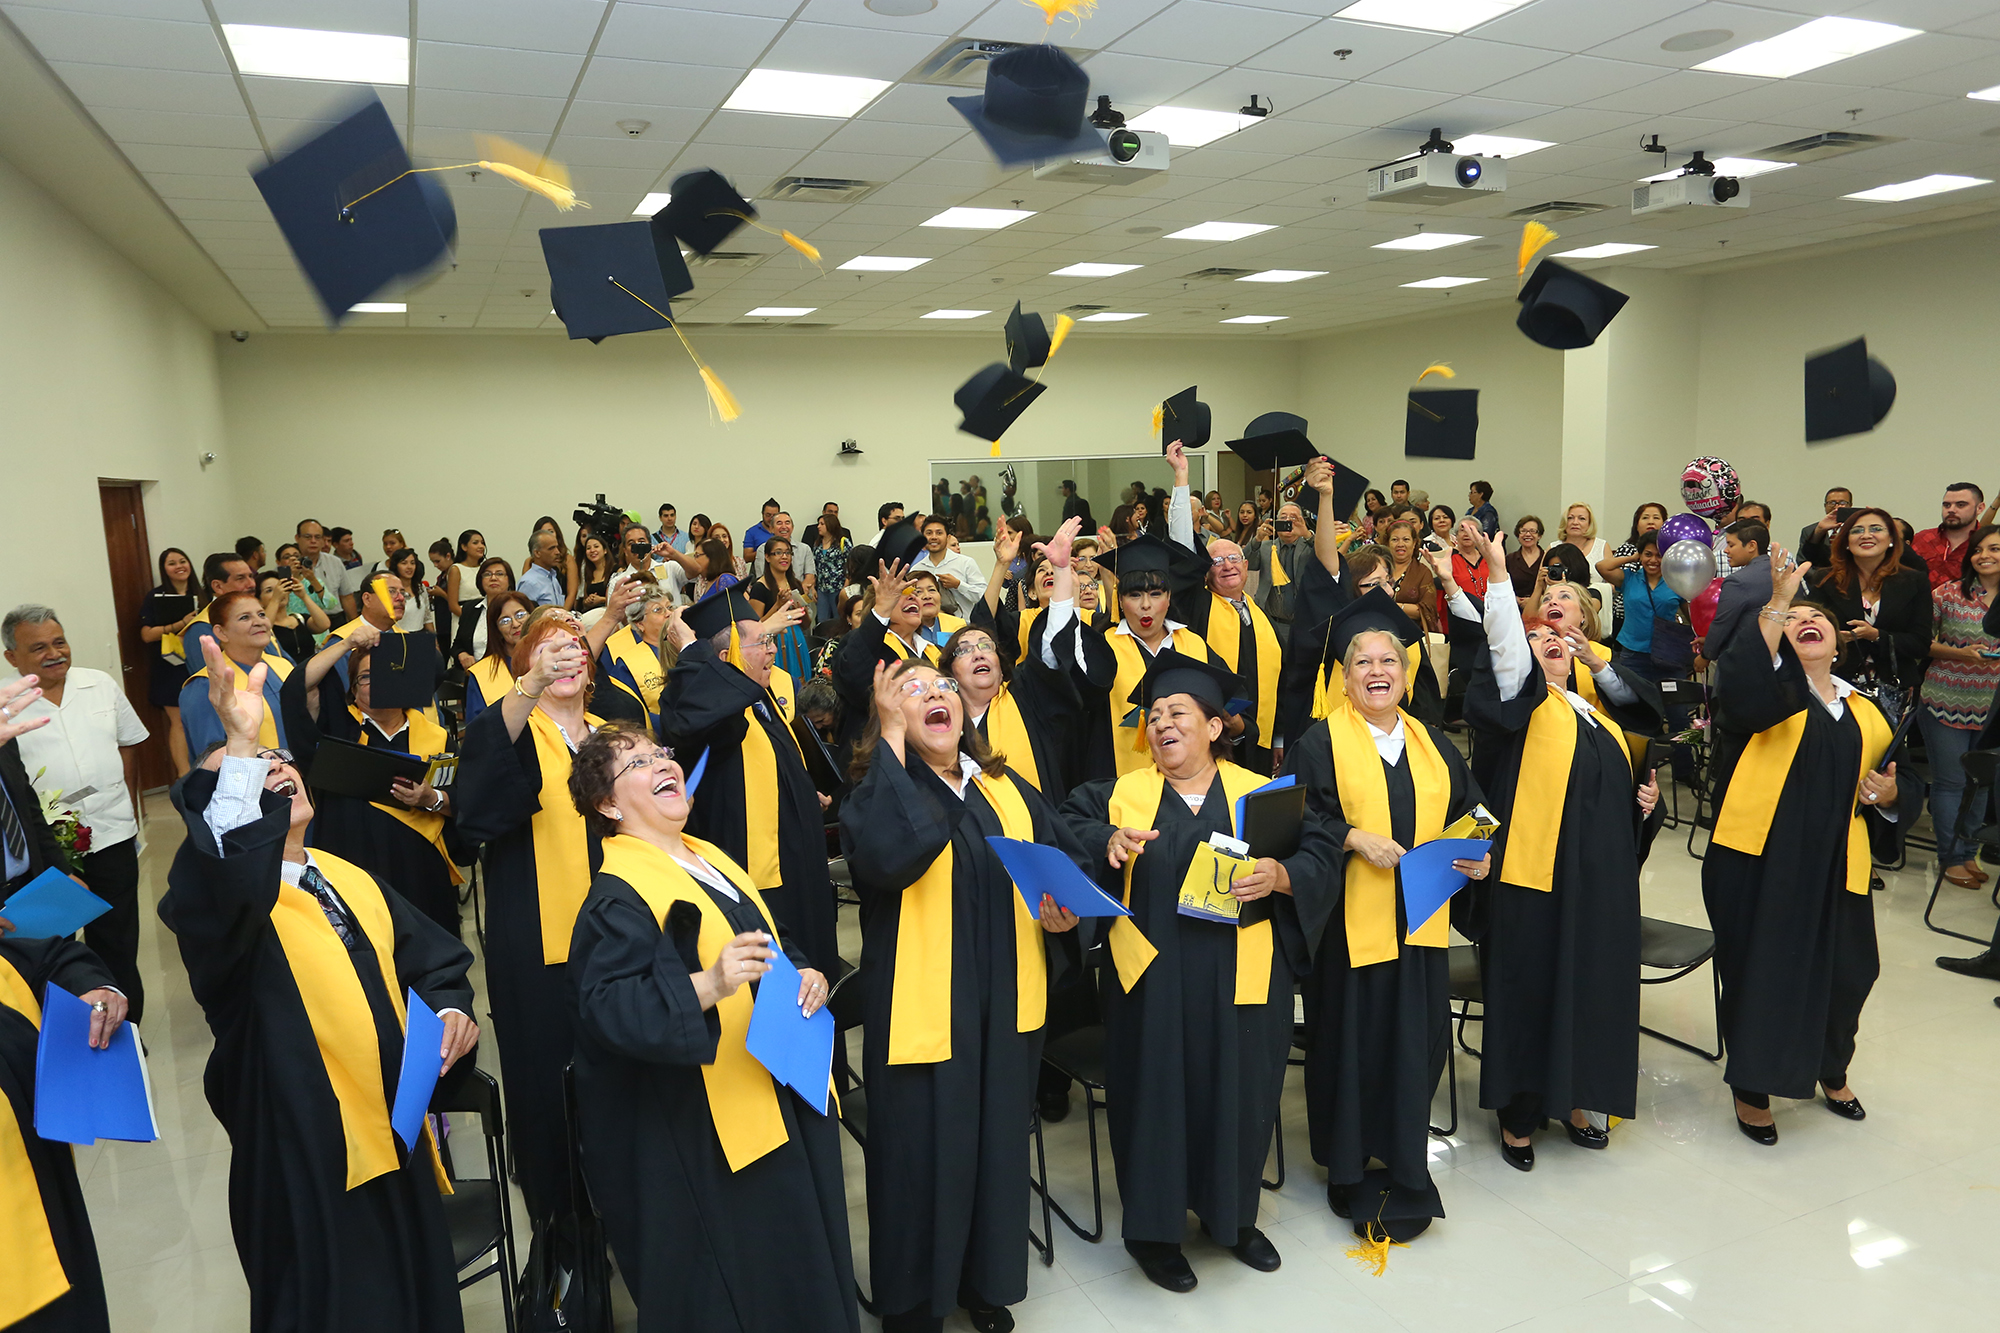 7La ceremonia de graduación concluyó con el lanzamiento del Birrete